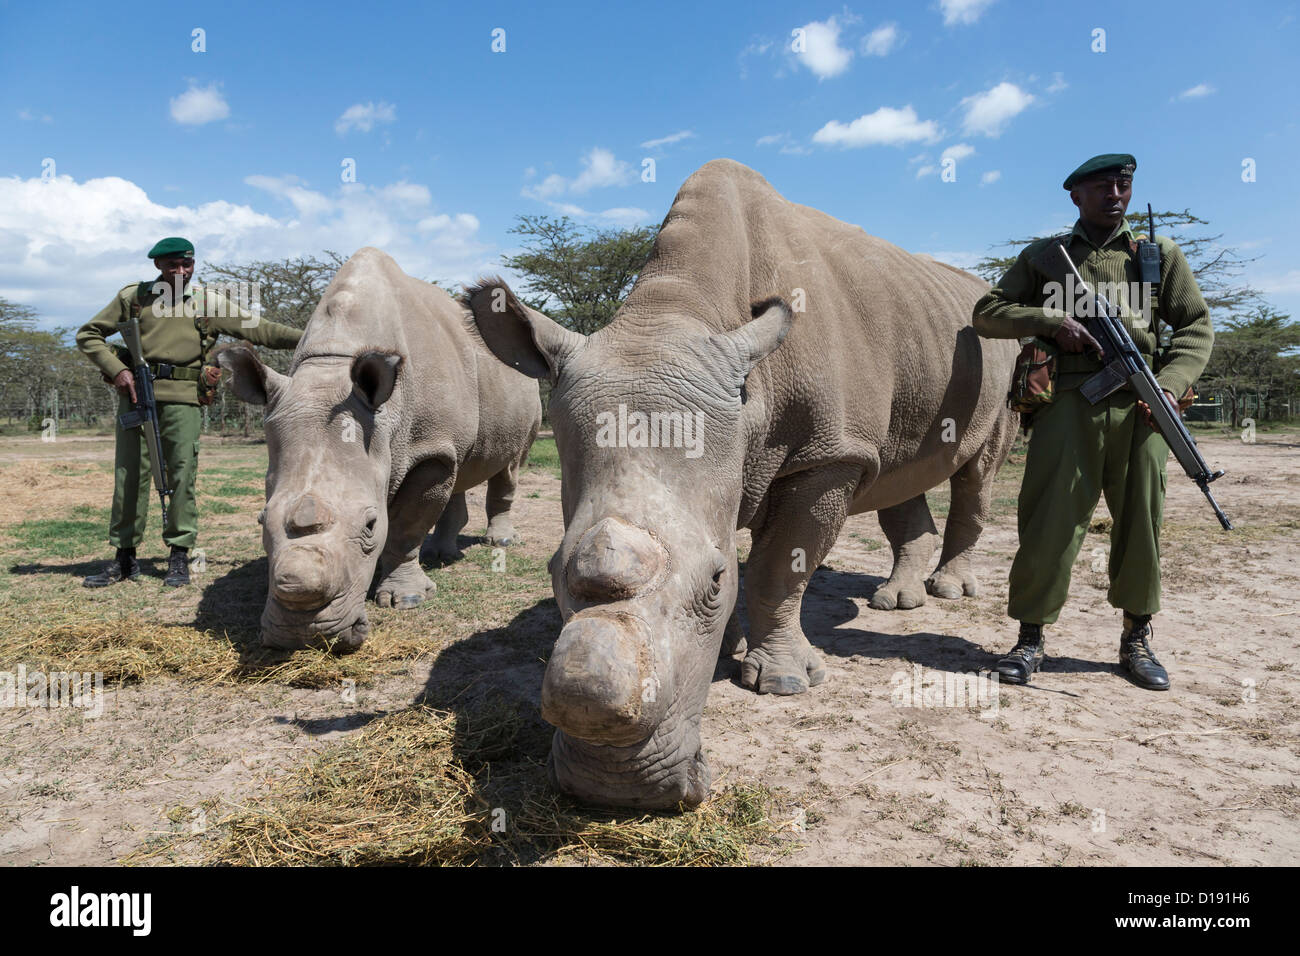 Le rhinocéros blanc du nord (Ceratotherium simum cottoni) taureau appelé Suni avec Najin, appelé vache avec garde armée, Ol Pejeta , Kenya Banque D'Images